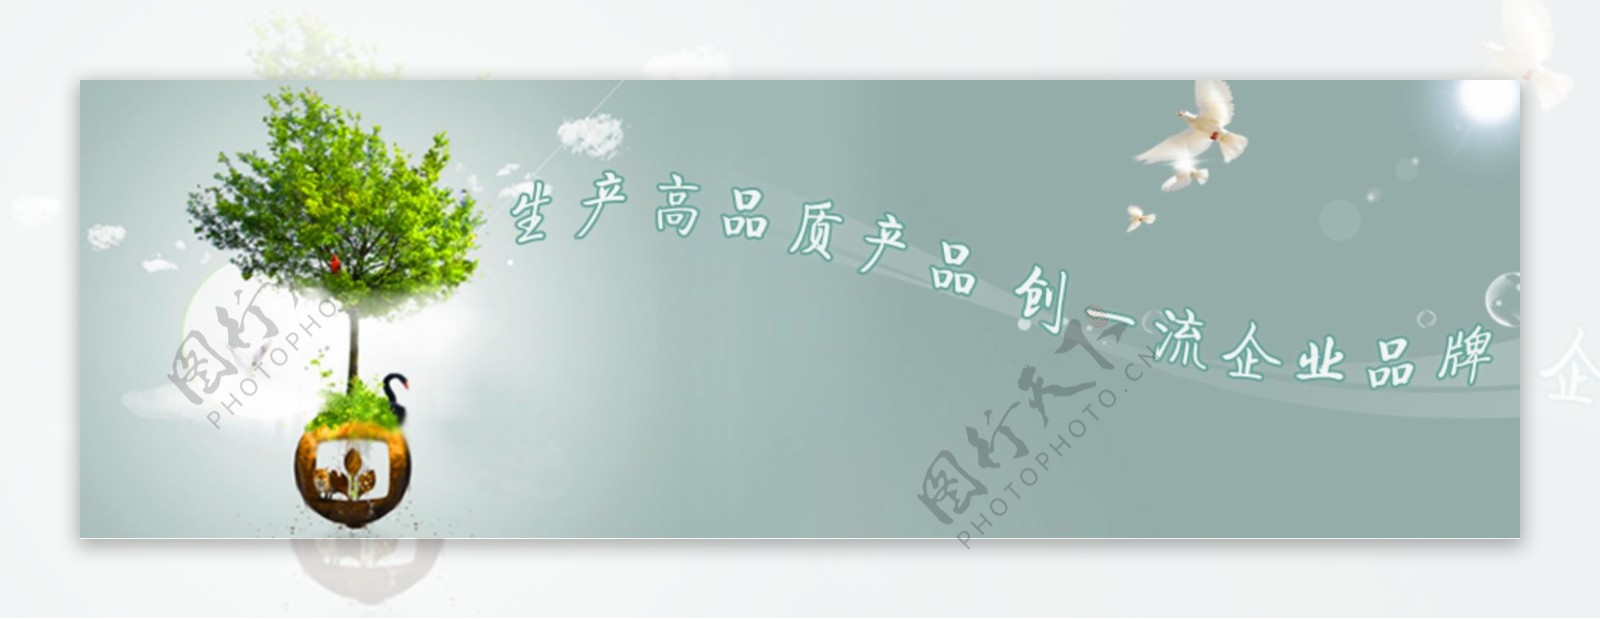 生物集团banner图片